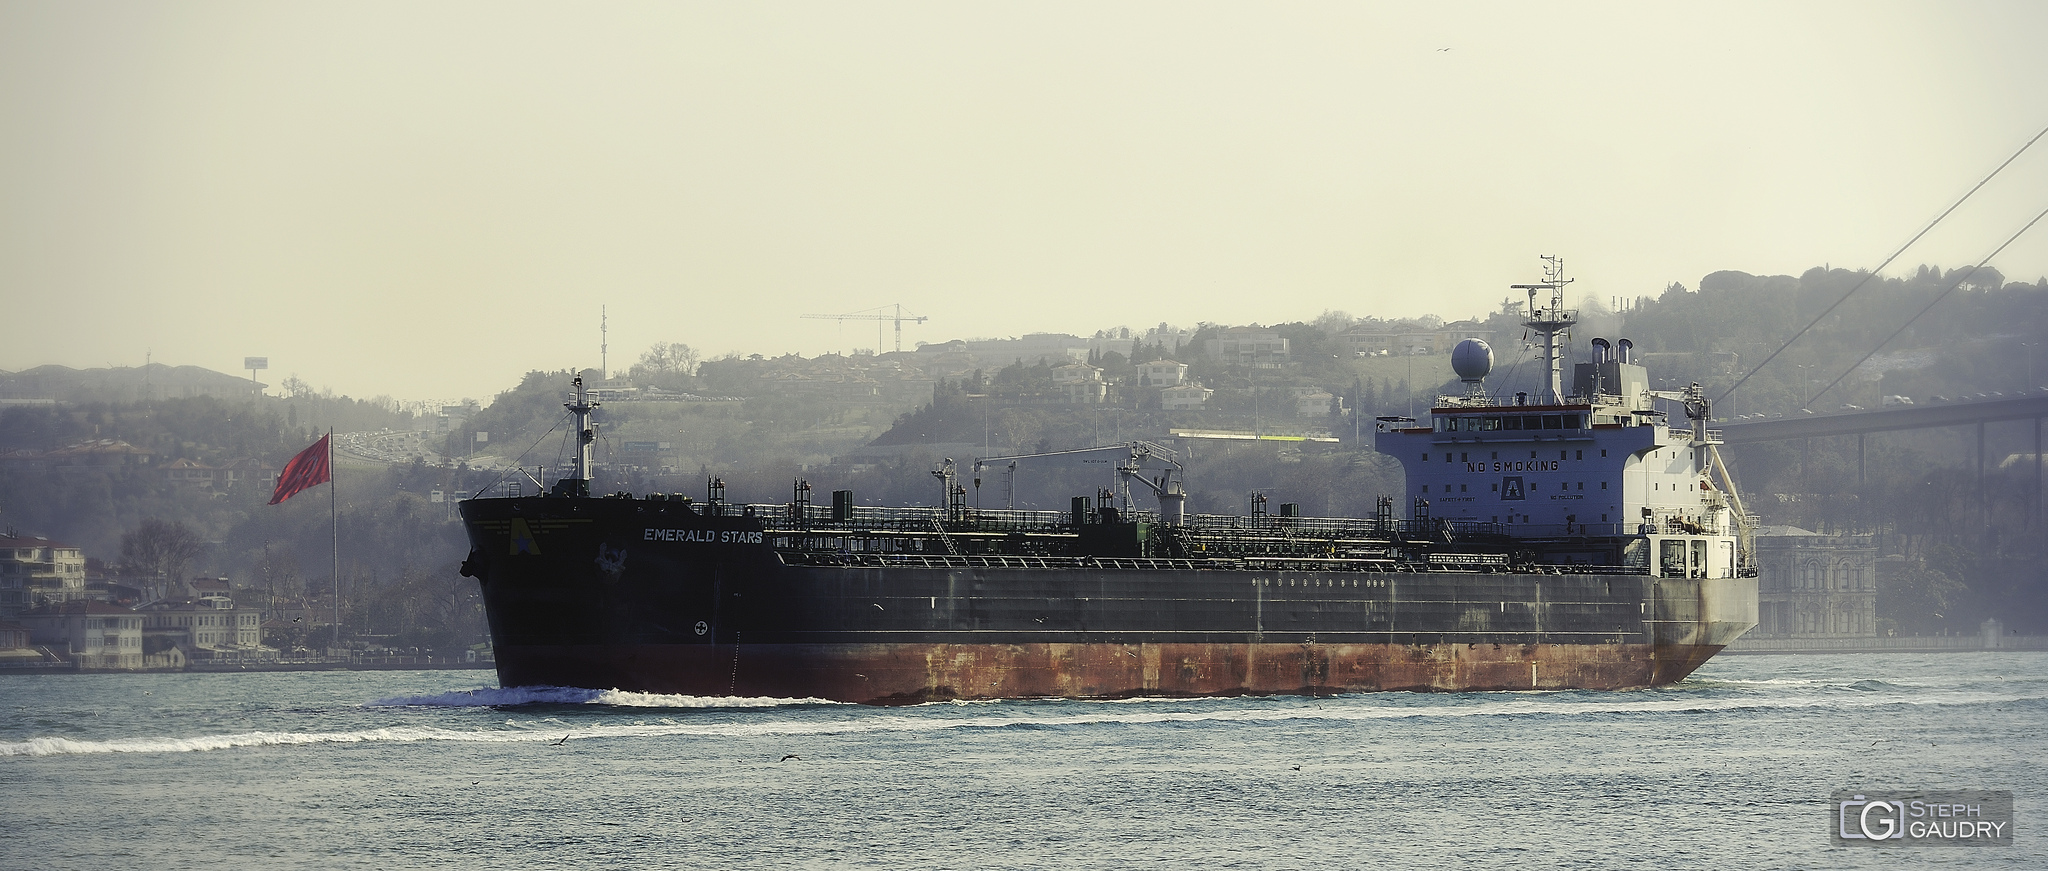 EMERALD STARS Chemical/Oil Tanker - Bosphorus near Istanbul [Klicken Sie hier, um die Diashow zu starten]